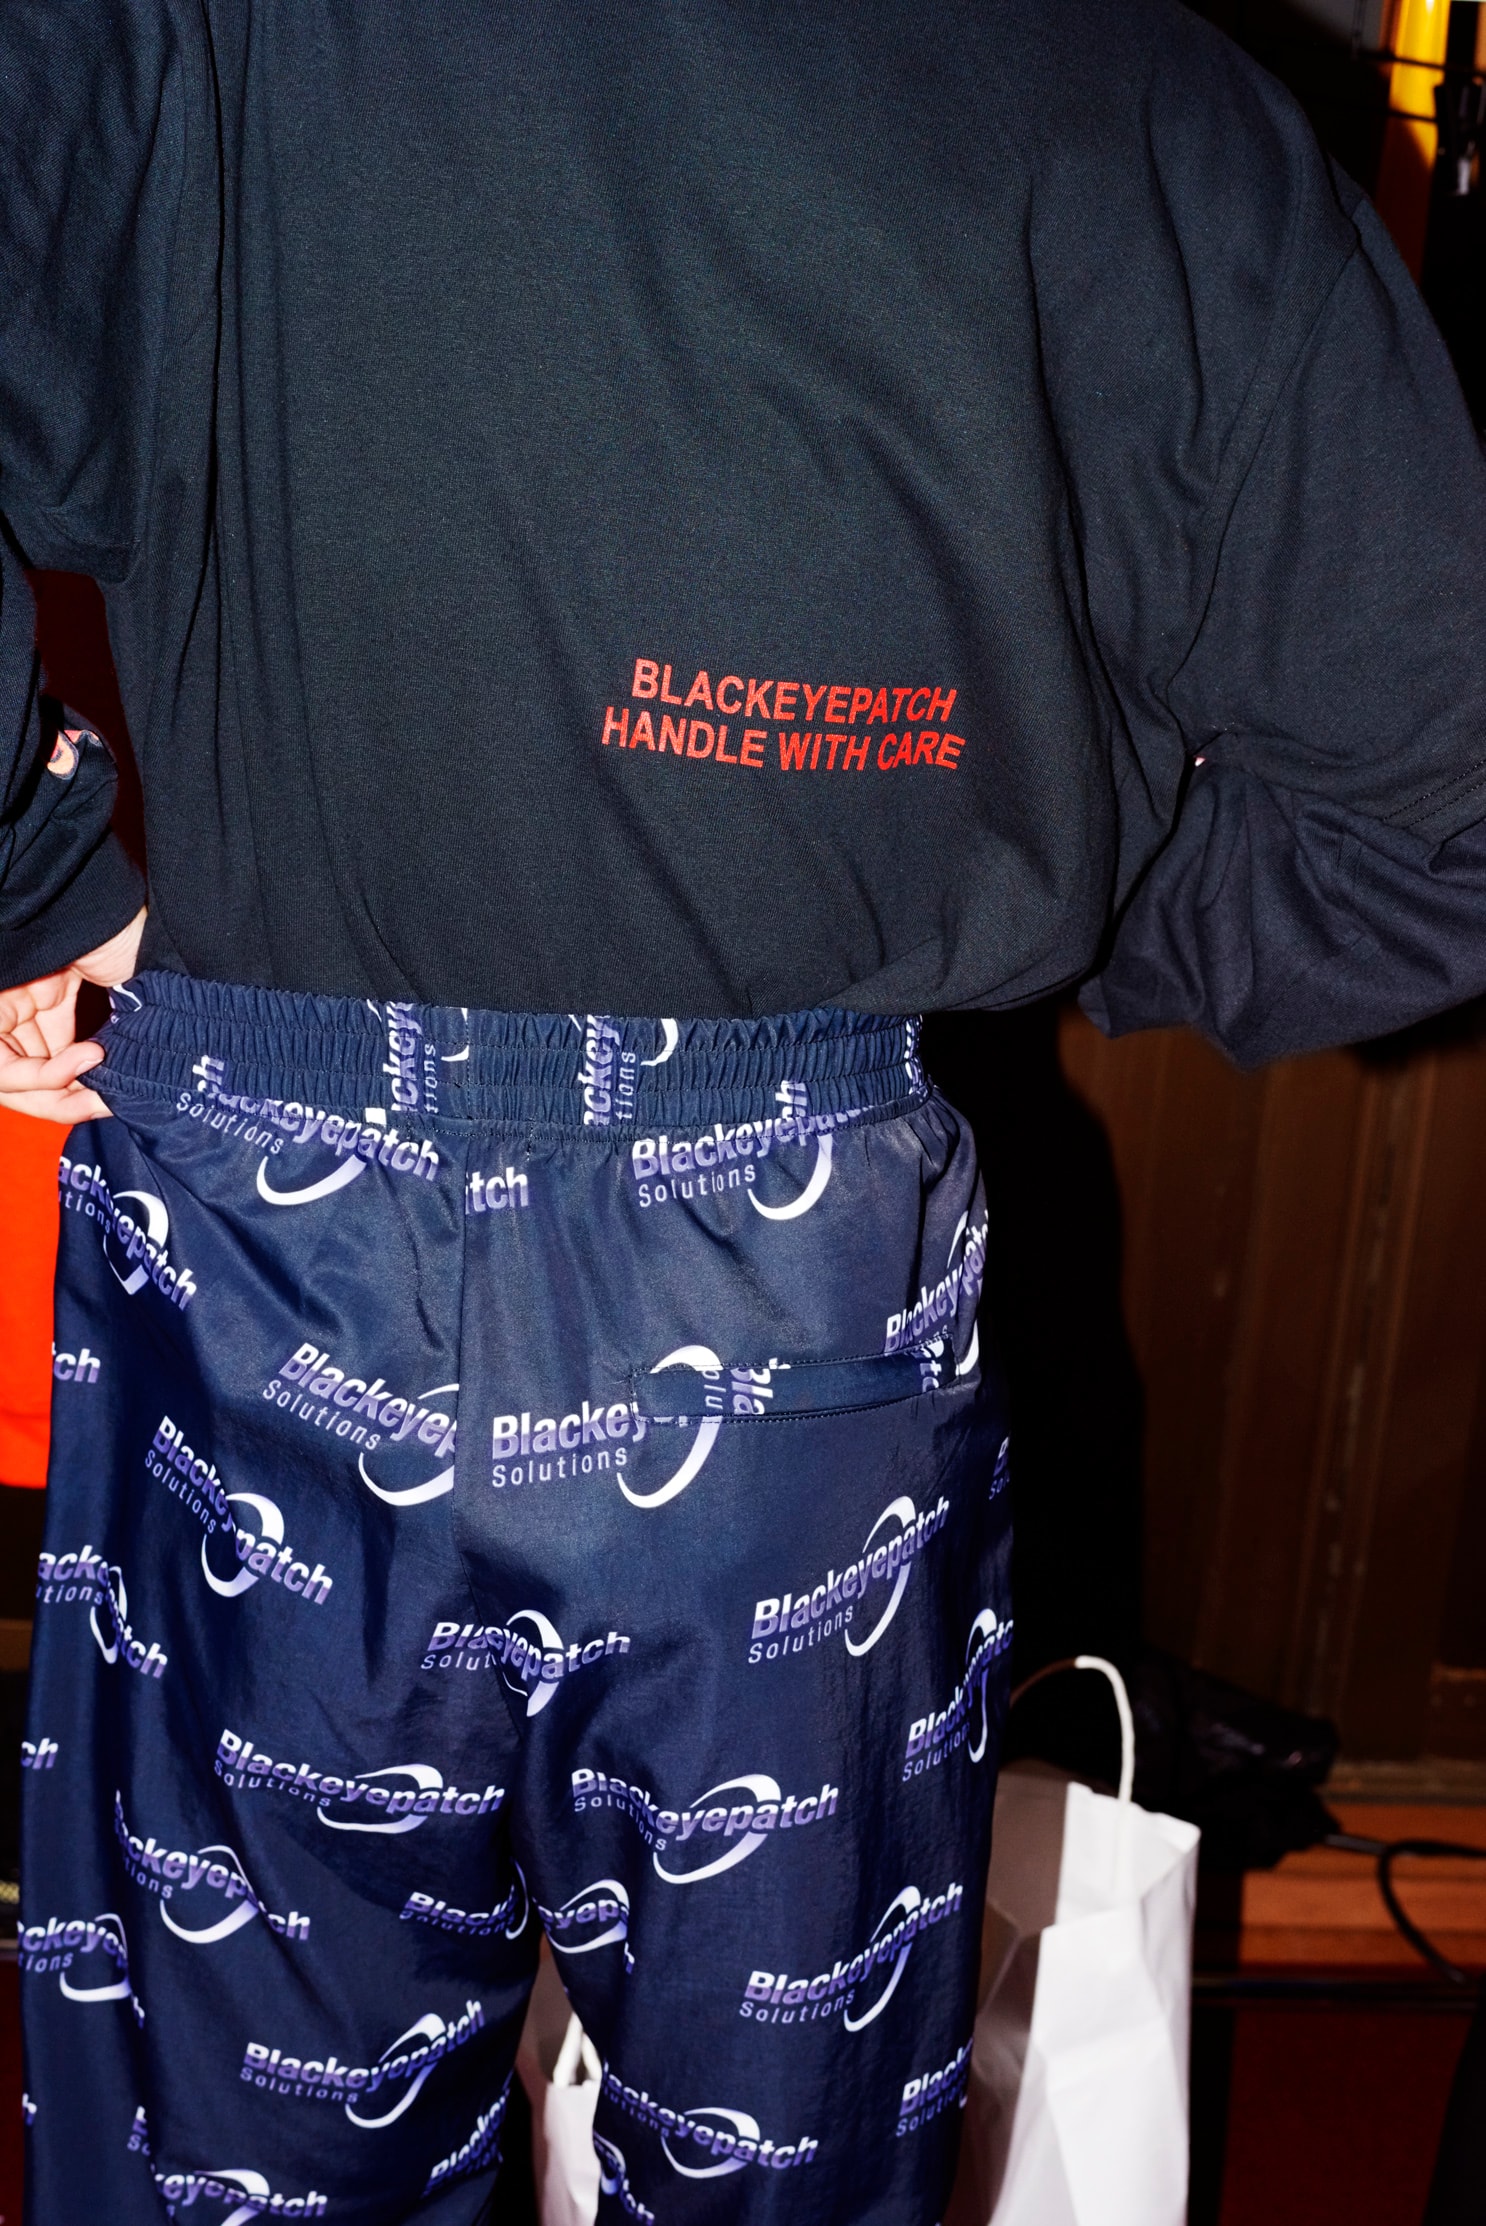 BlackEyePatch が2000年初頭から中期のNYヒップホップシーンをヒントにした2018年春夏コレクションのルックブックを公開 ルックブックの舞台は2018年春夏の“AT TOKYO”で開催したランウェイのバックステージ ルックブックの舞台は2018年春夏の“AT TOKYO”で開催したランウェイのバックステージ “東京”をアイデンティティに、様々なカルチャー的背景を持ちながら、神出鬼没に活動する〈BlackEyePatch（ブラックアイパッチ）〉より、2018年春夏コレクションのルックブックが到着した。舞台は「Amazon Fashion Week TOKYO 2018 Spring/Summer」の特別プログラム、“AT TOKYO”に参加した際のバックステージ。今季はグラフィティライターに欠かせない業務用ステッカーから、“取扱注意”のモチーフが目に止まるが、その他にも〈BEP〉のルーツのひとつでもある00年～05年辺りのニューヨーク・ヒップホップにも傾倒している。  その例としては、’03年頃に流行したラグジュアリーカーの代名詞「Rolls Royce（ロールス・ロイス）」へのオマージュがひとつ。また、モバイル企業広告のアーティスト起用とラッパーたちのミュージックビデオに度々モバイルフォンが登場したという相互関係を汲み取り、テック系の企業ロゴをイメージした“BlackEyePatch SOLUTIONS”などが挙げられる。加えて、〈Ed Hardy（エド ハーディー）〉、〈Von Dutch（ボン ダッチ）〉、〈True Religion（トゥルー レリジョン）〉といった’00年中頃のLAセレブスタイルにもヒントを受け、タトゥーのデザインやラインストーンをモチーフにしたアイテムも展開されている。  赤木雄一がシャッターを切った〈BlackEyePatch〉の最新ルックブックは、上のフォトギャラリーからご確認を。あわせて『HYPEBEAST』が独自で撮影した本バックステージの様子も振り返り、コレクションに対する理解を深めてみてはいかがだろうか。